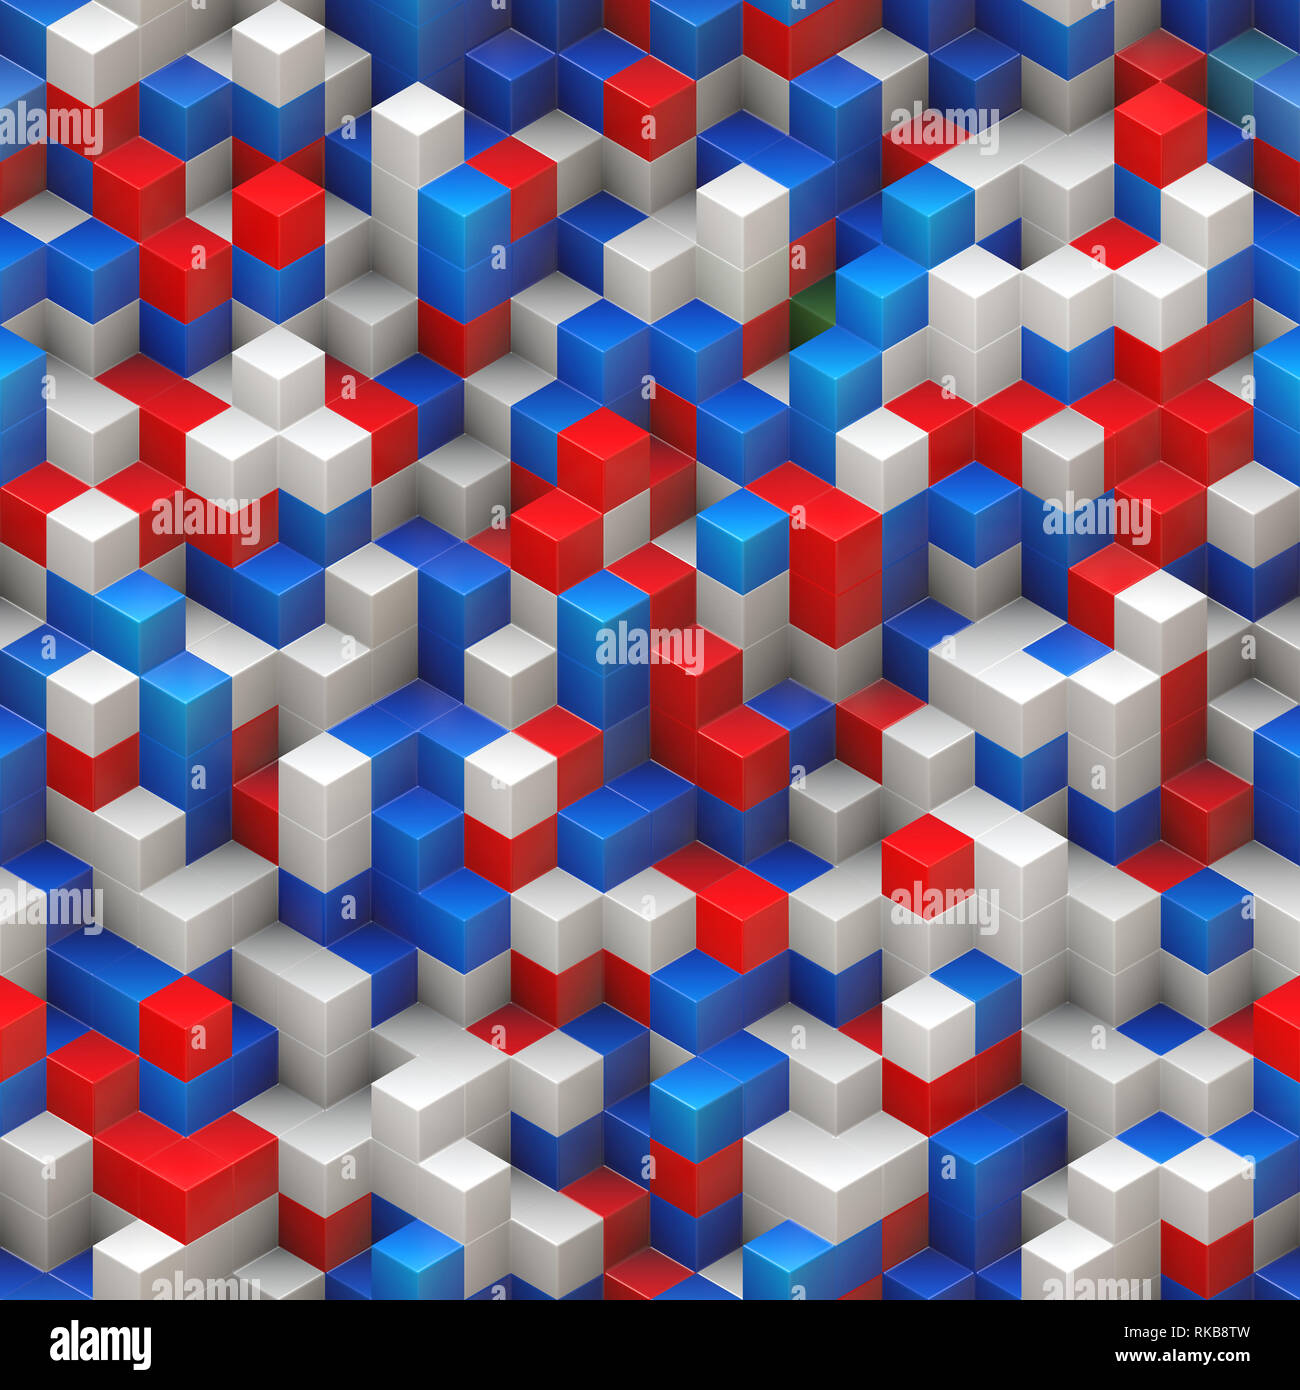 Würfel nahtlose Hintergrund - bunt, rot blau weiß, zufällig zusammengesetzte Struktur - 3D-Rendering Stockfoto